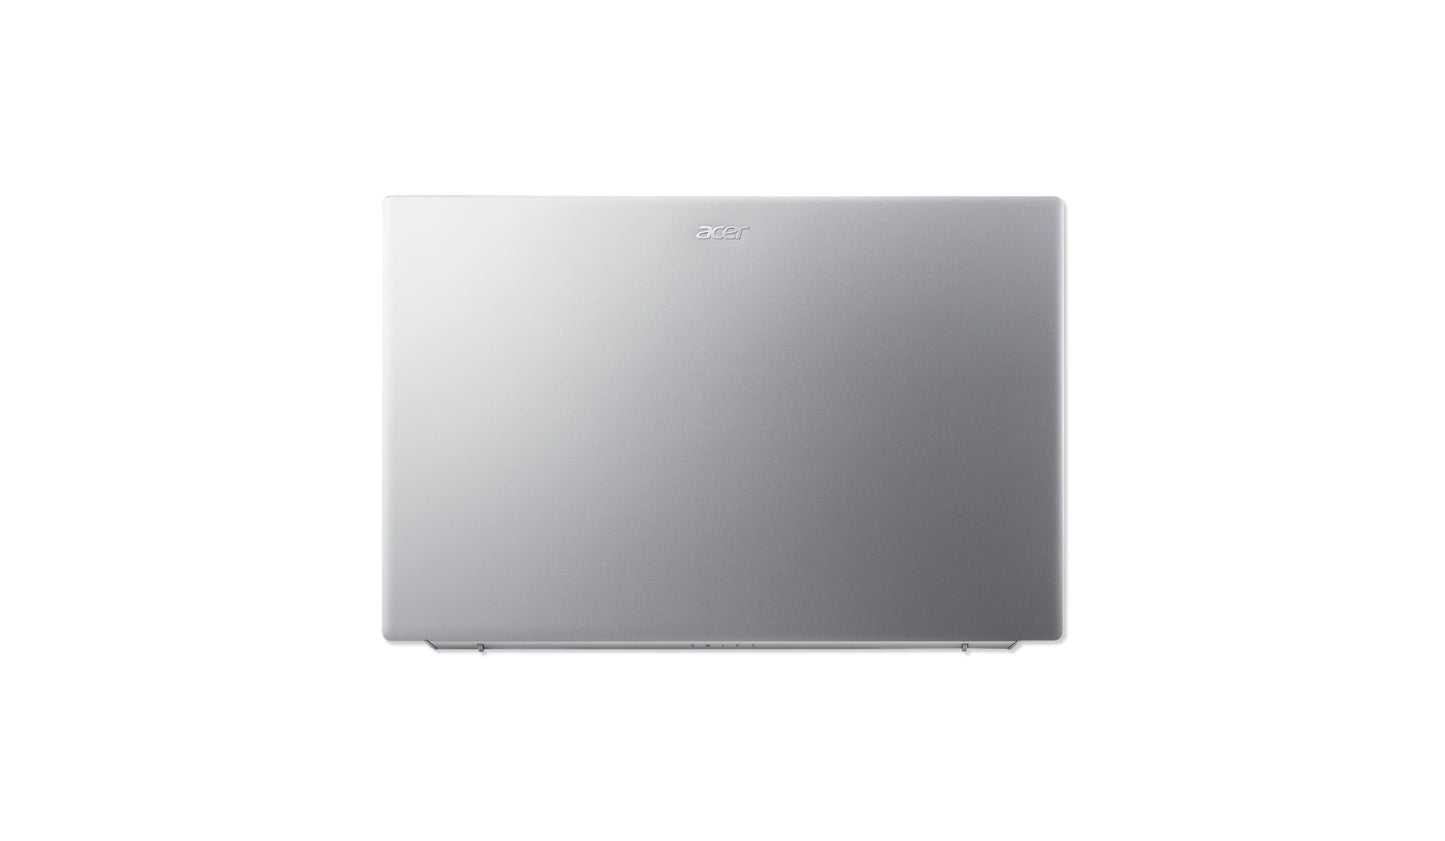 Swift 3 Laptop, Intel® Core™ i7-1165G7 processor Quad-core 2.80 GHz, 8 GB RAM, 256 GB SSD.